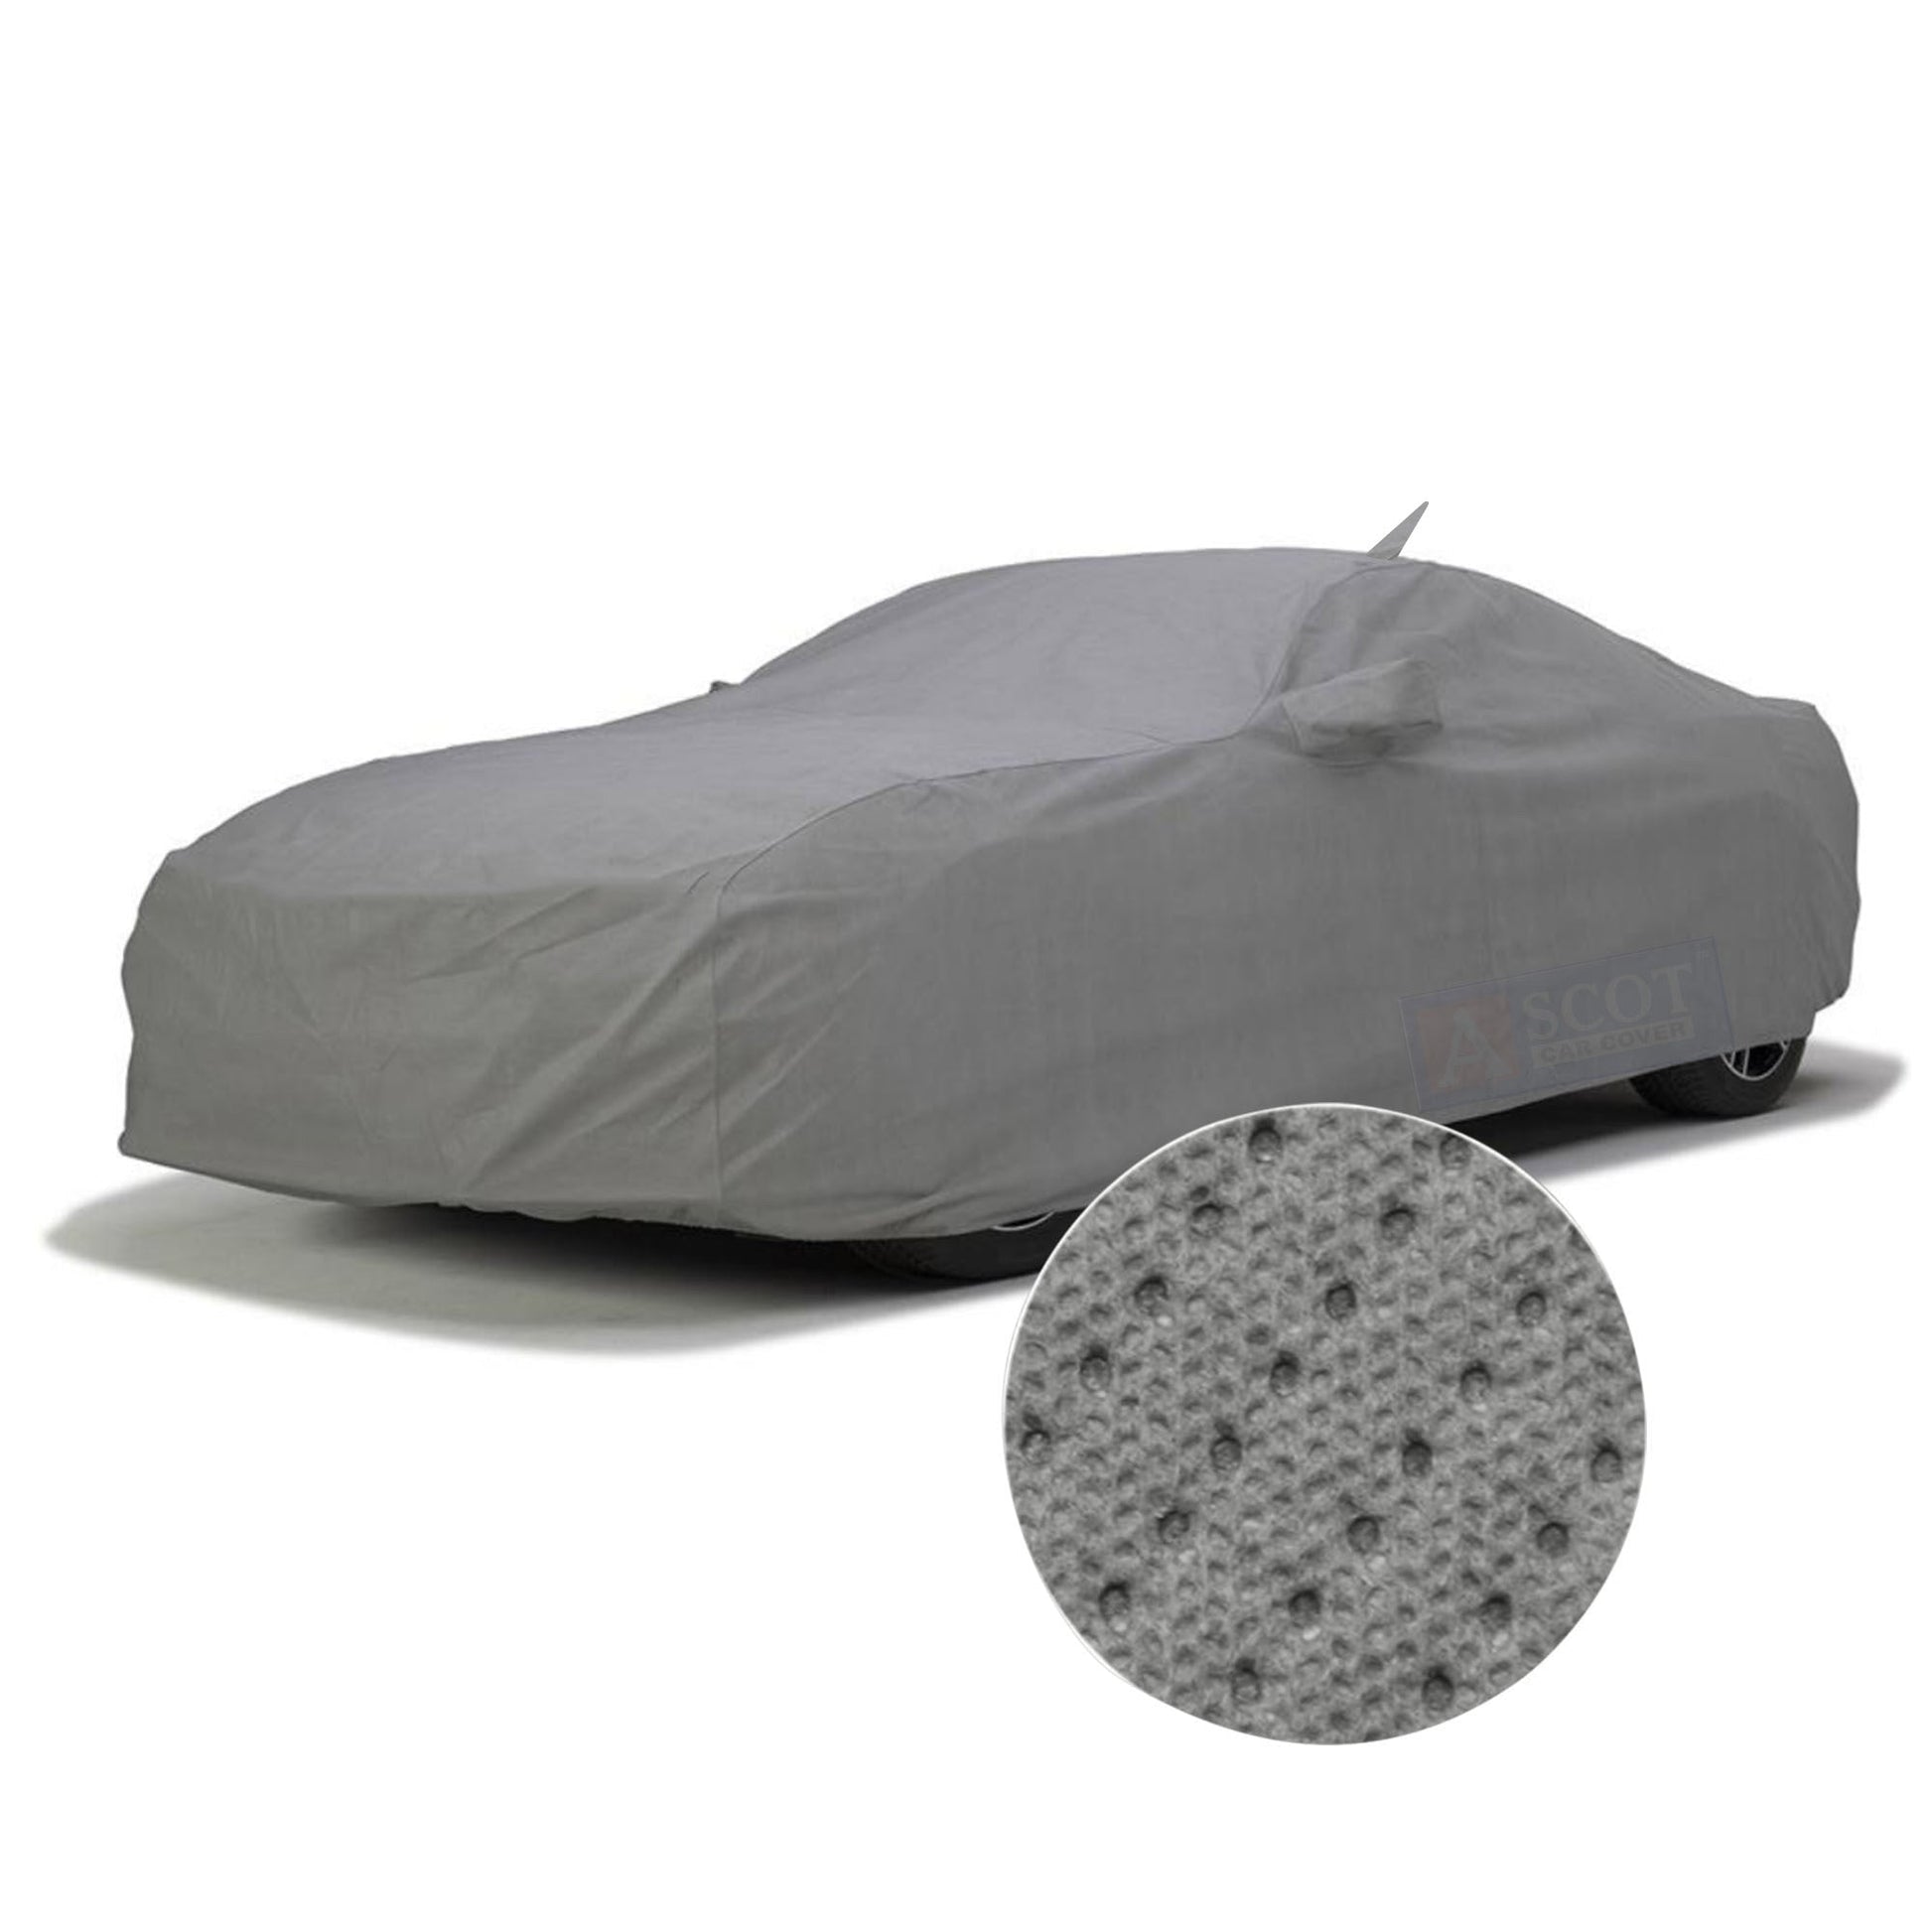 Buy MADAFIYA Royals Choice Car Body Cover Compatible with Skoda